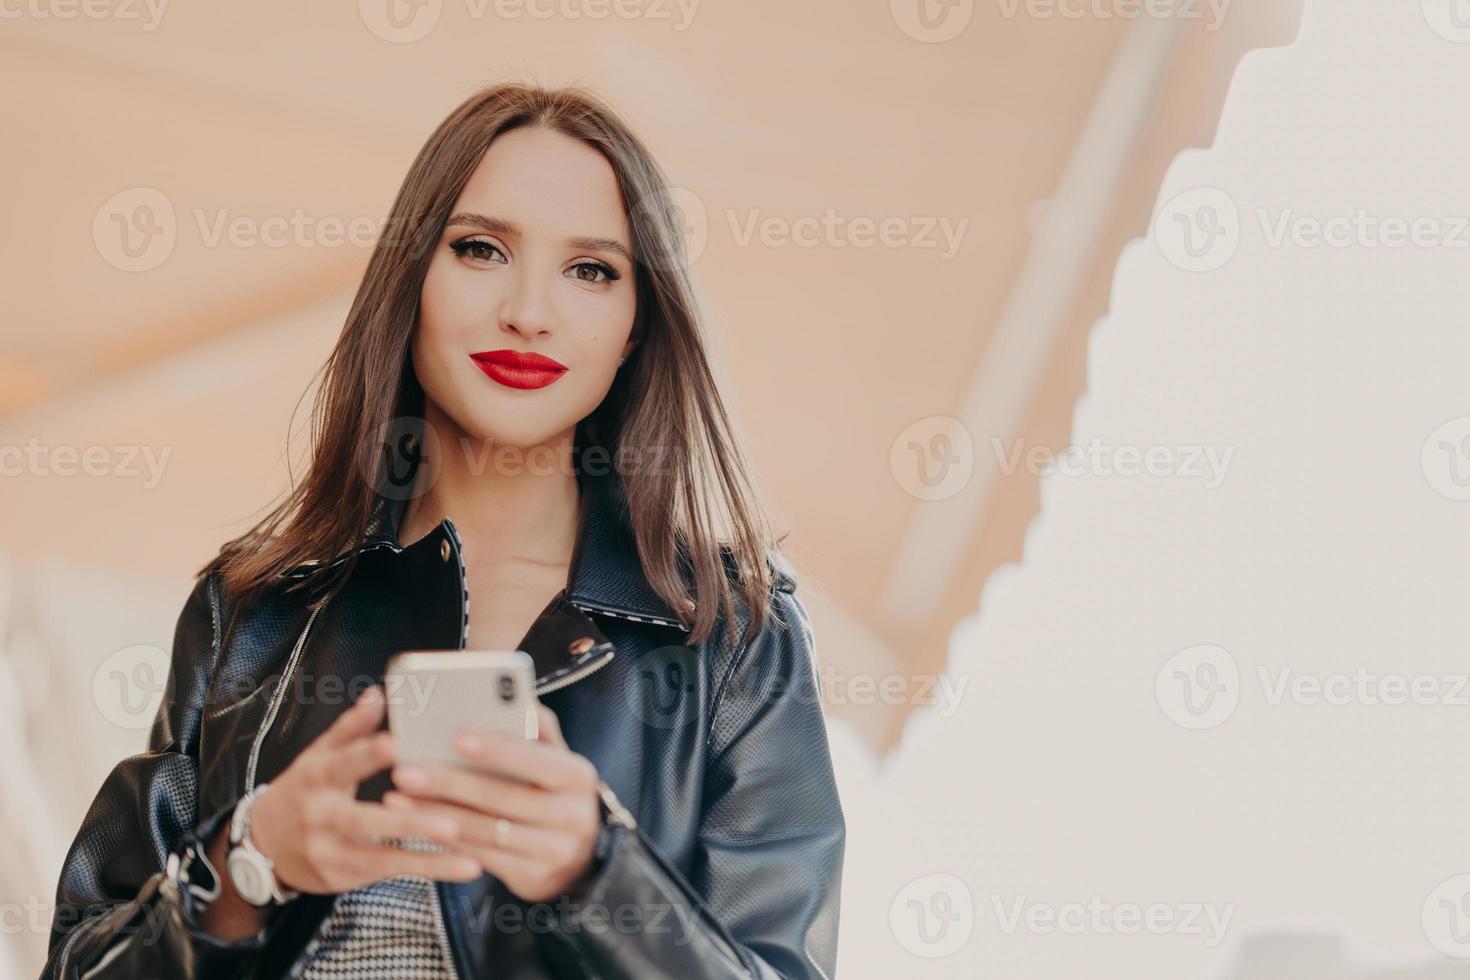 photo horizontale d'une jolie femme aux cheveux noirs avec des lèvres peintes en rouge, vêtue d'une veste en cuir noir, tient un téléphone portable moderne, envoie des messages texte, discute en ligne, se promène dans la rue de la ville. La technologie